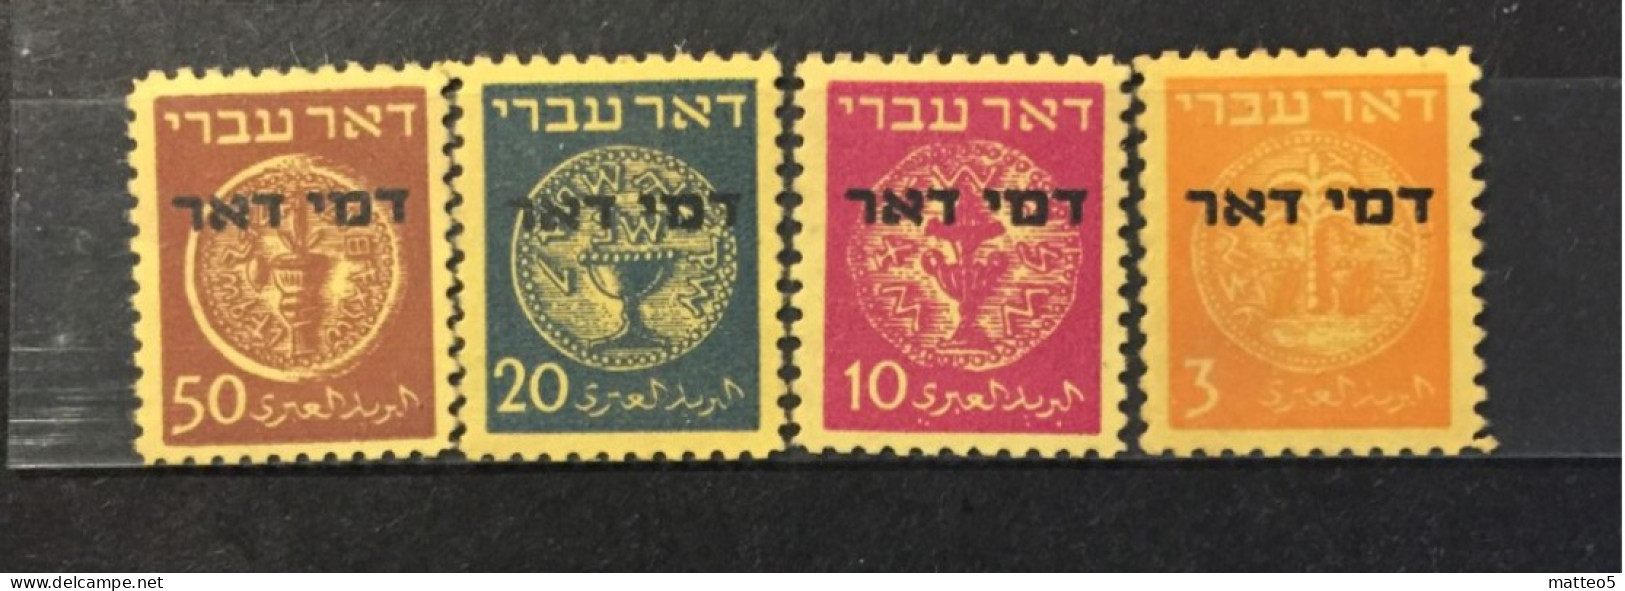 1948 - Israel - Coins Doar Ivri - Postage Due . No Tab - 4 Stamps Unused - Ongebruikt (zonder Tabs)